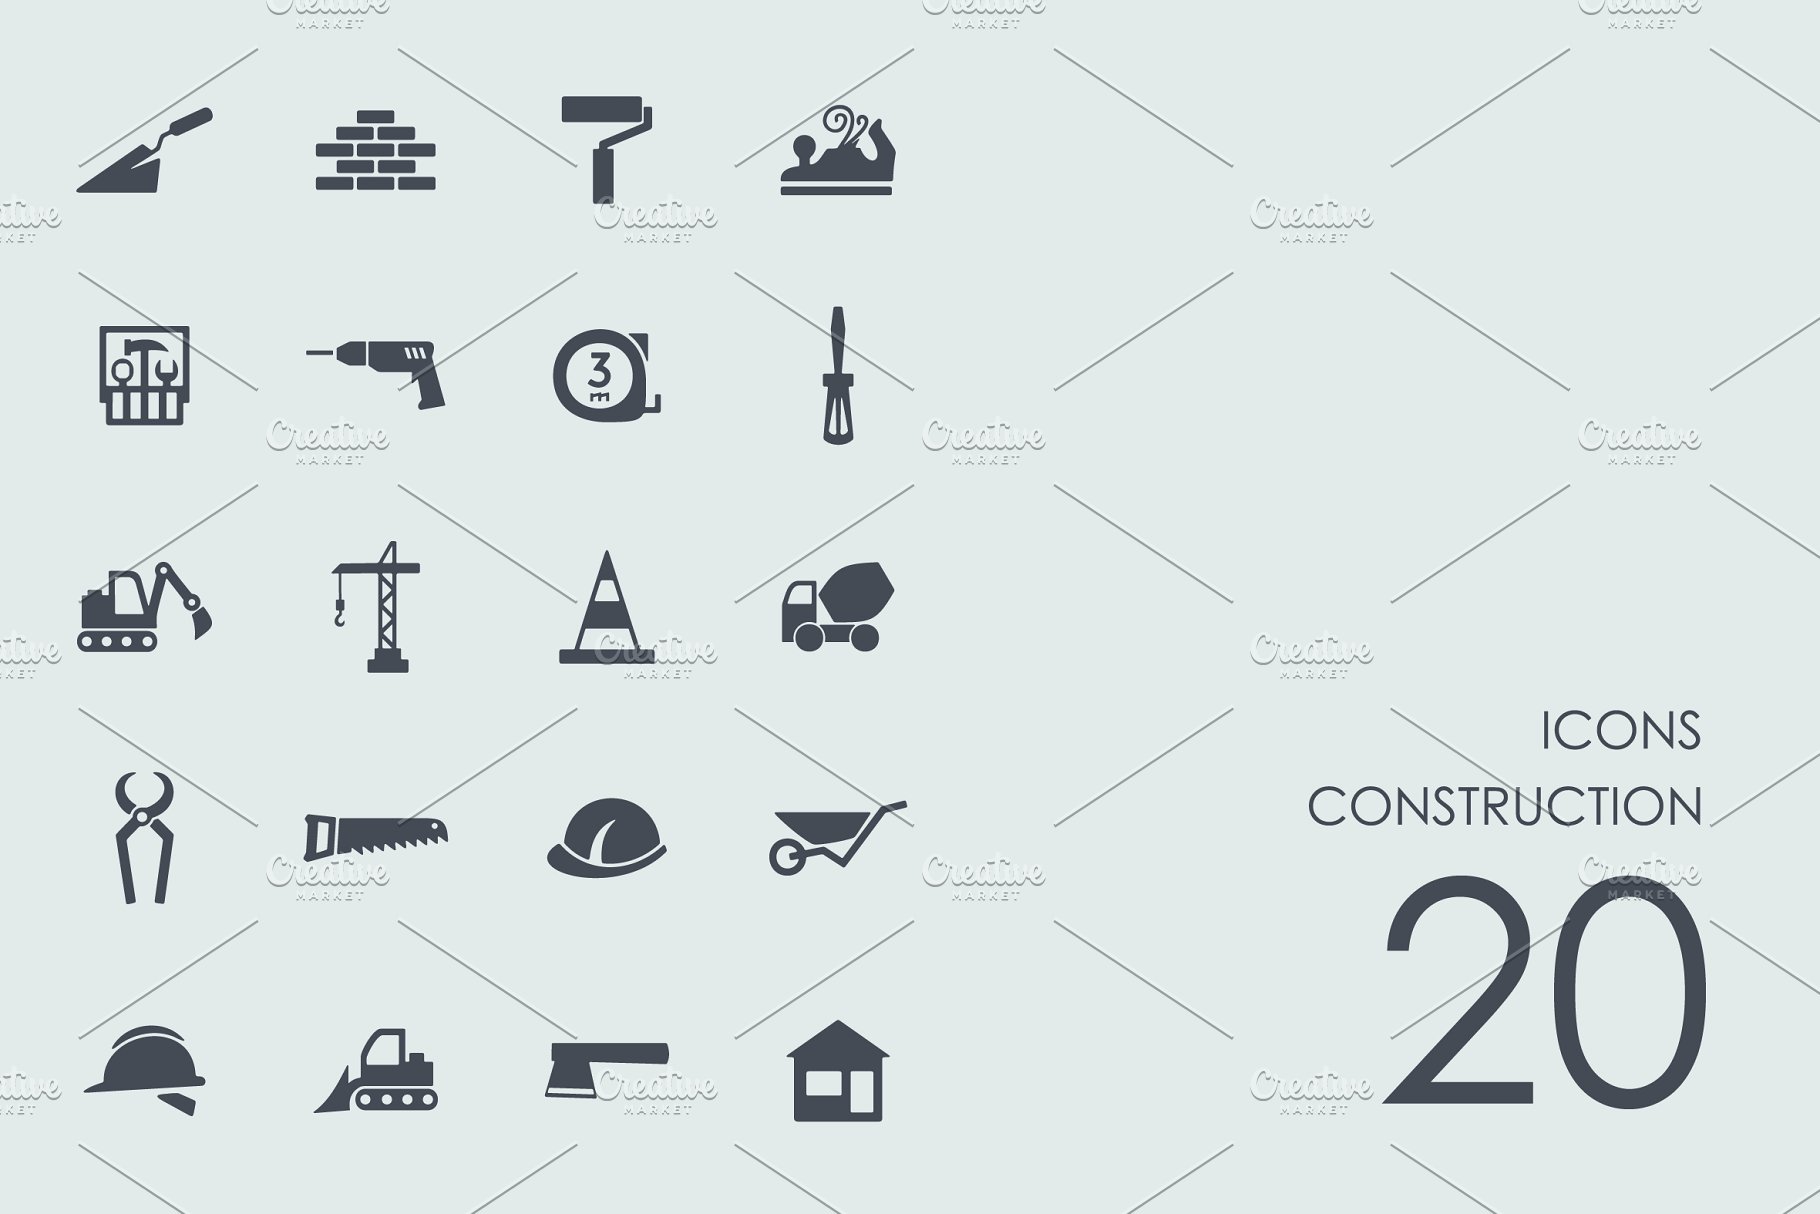 建筑主题图标 Construction icons插图